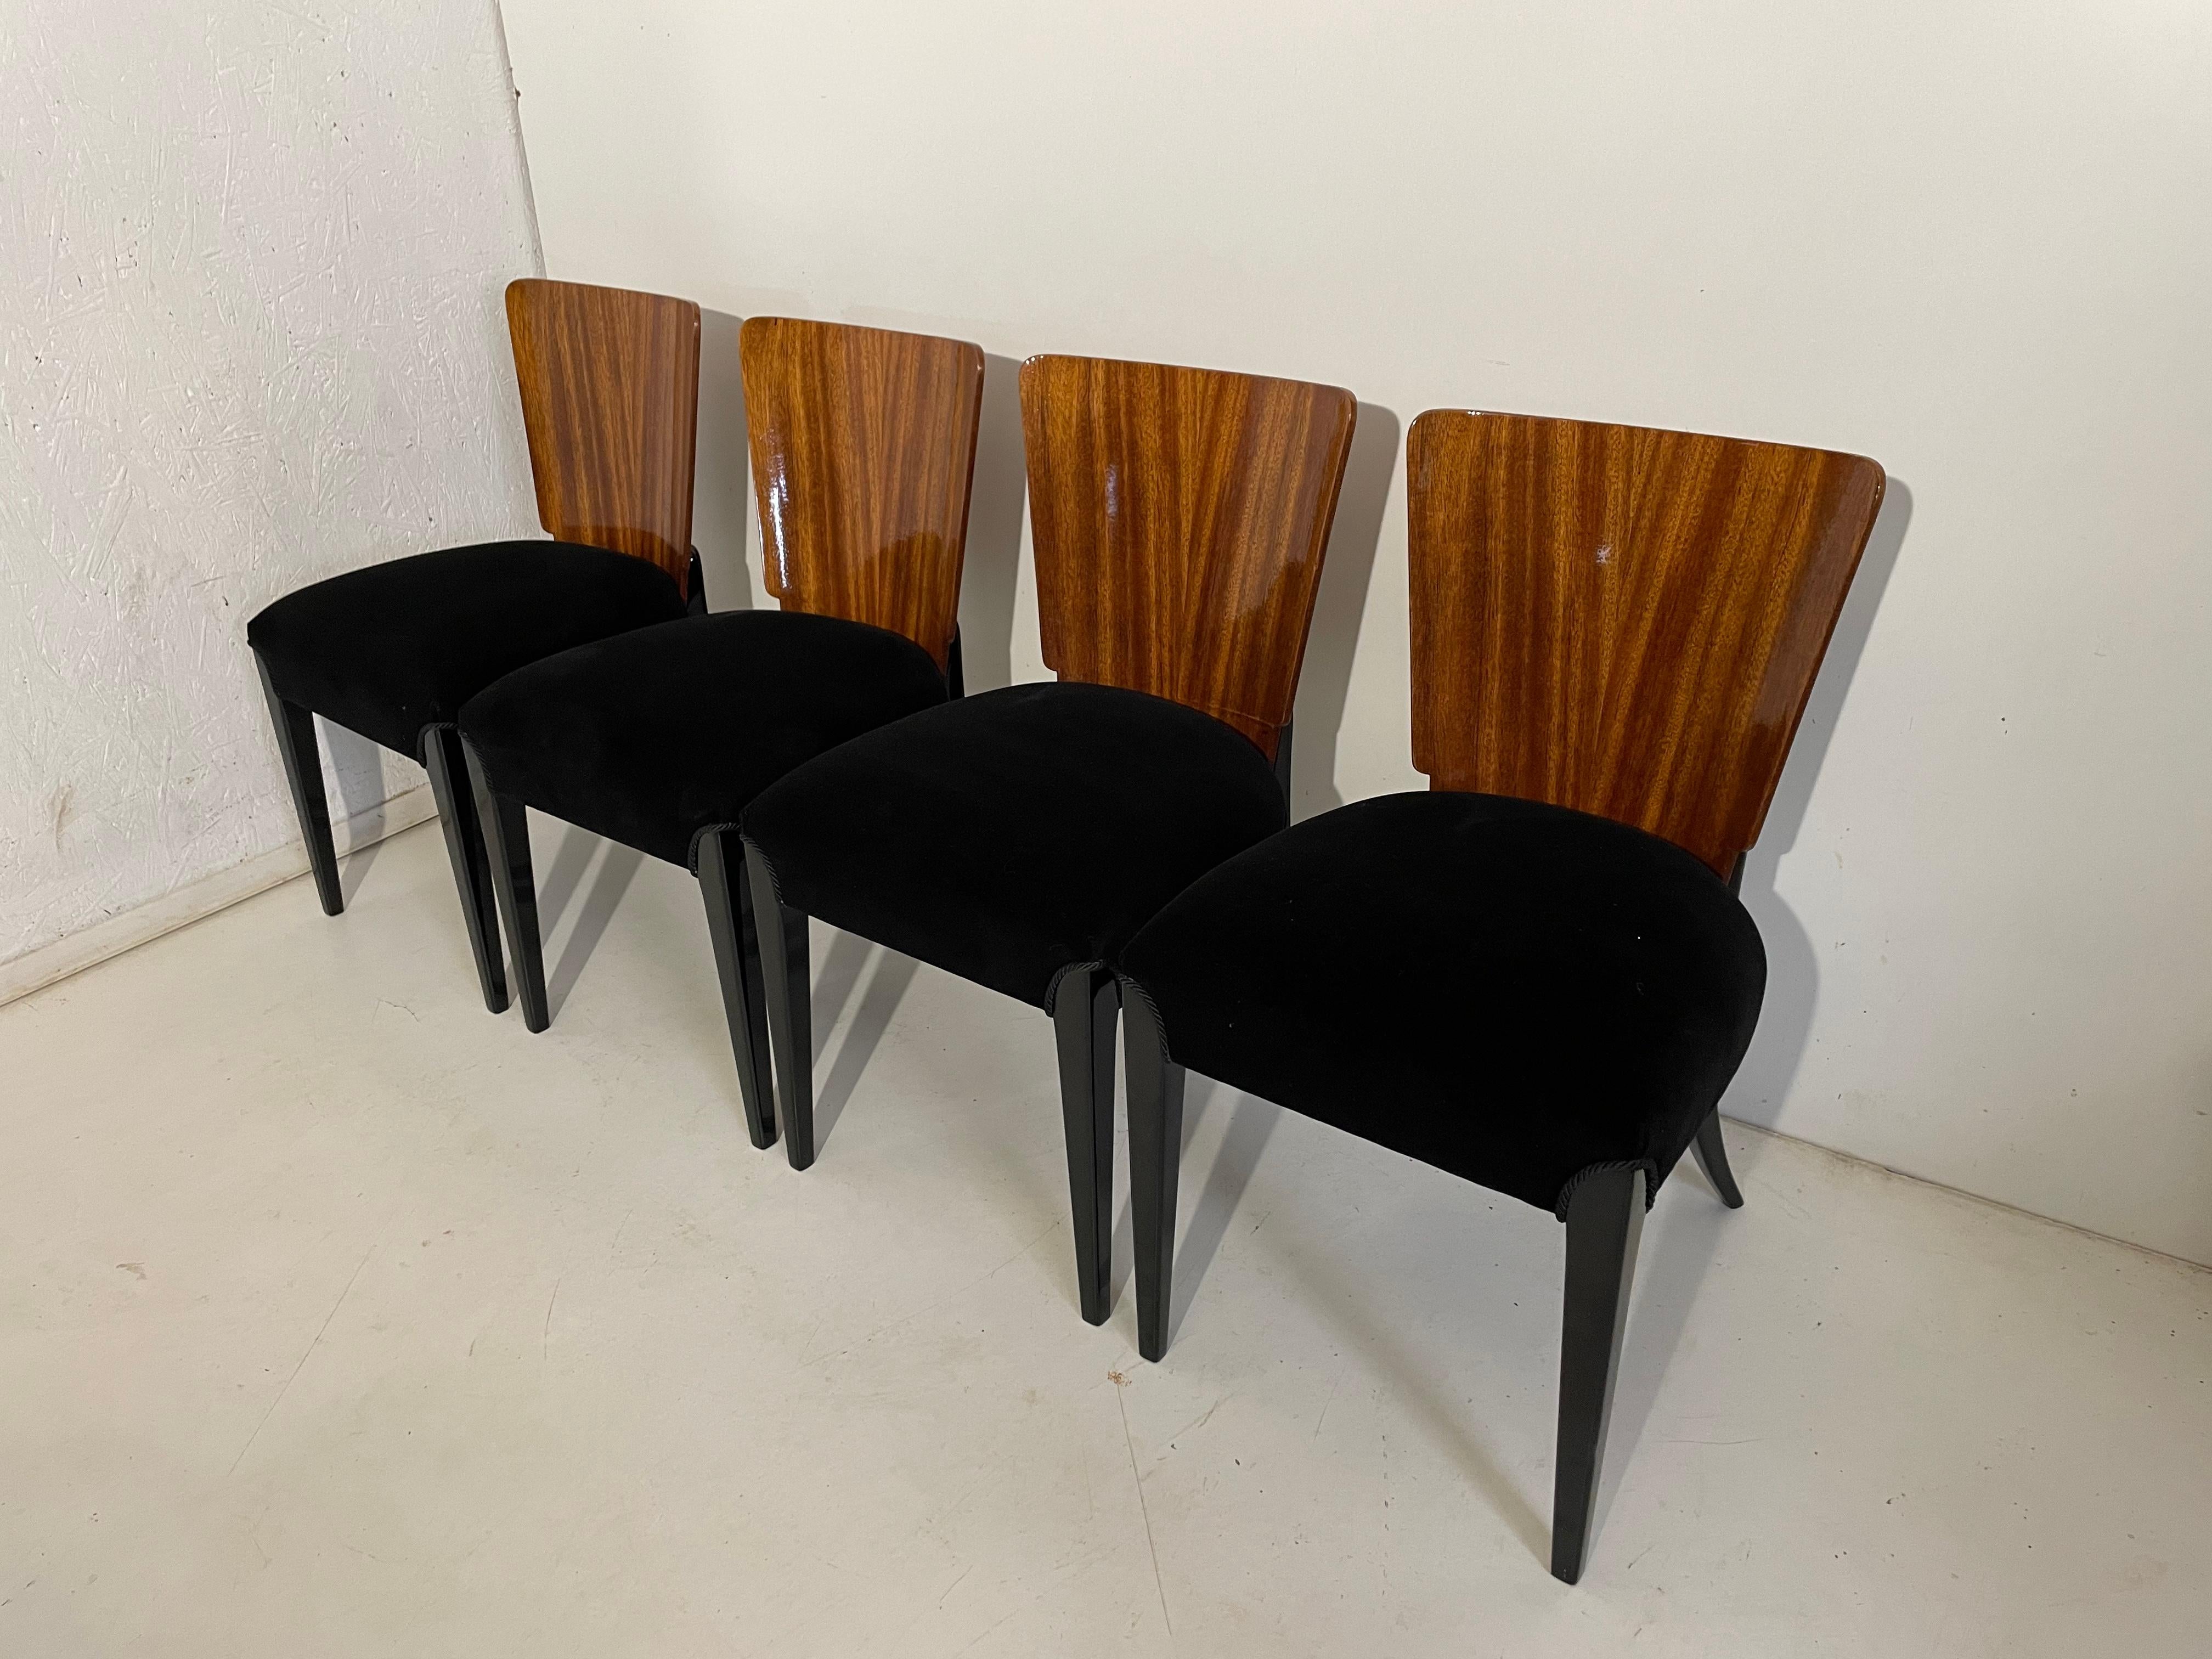 Art Deco vier Stühle von J. Halabala aus dem Jahr 1940 präsentieren wir die Stühle von J. Halabala aus den 1940er Jahren (ein tschechischer Designer, der zu den bedeutendsten Schöpfern der Moderne zählt. Der Höhepunkt seiner Karriere fiel in die